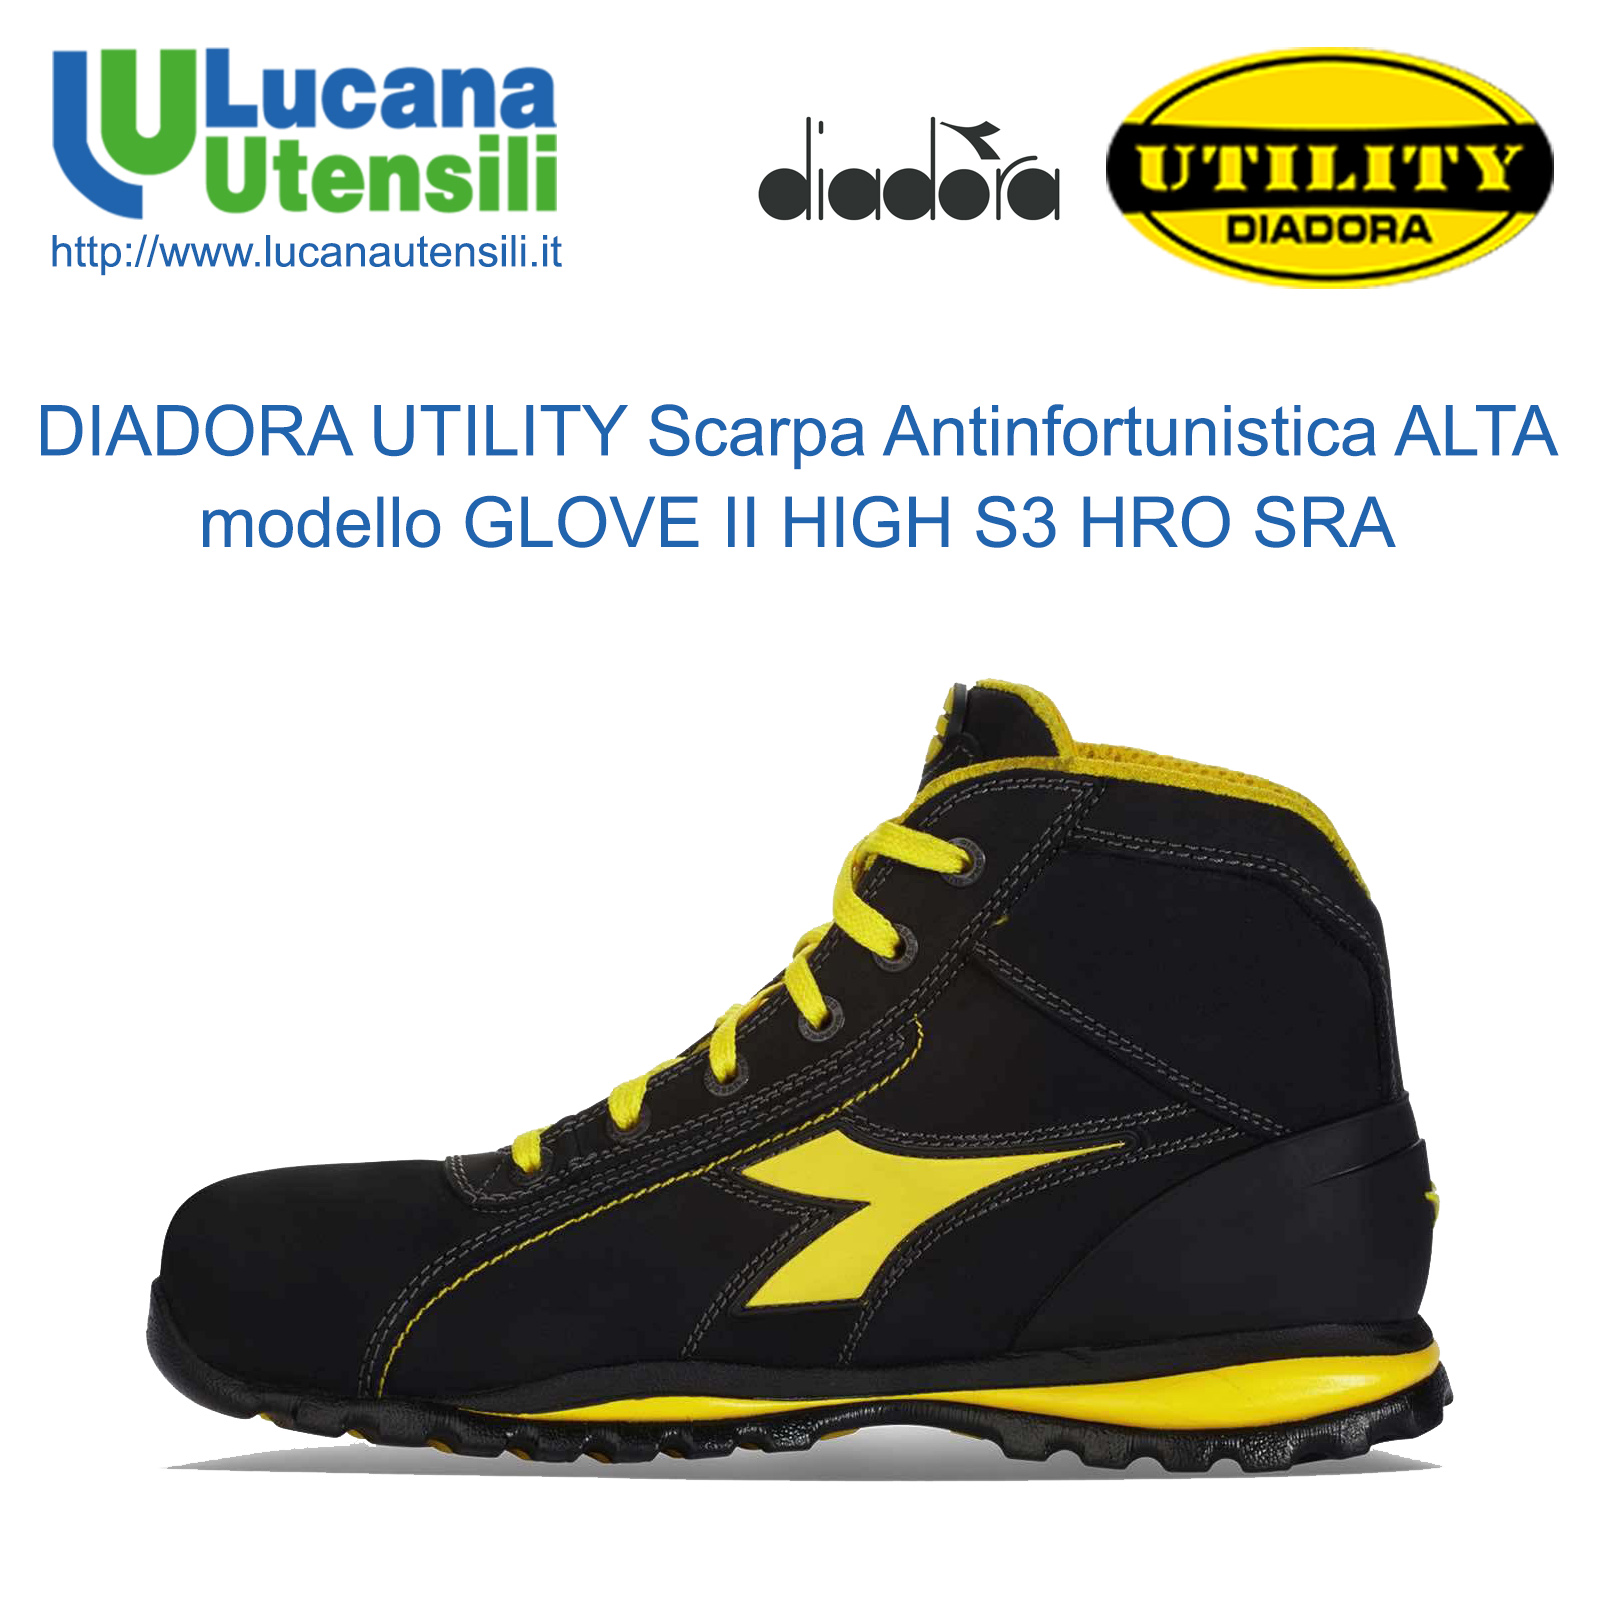 diadora utility scarpe antinfortunistica modello glove s3 hro sra